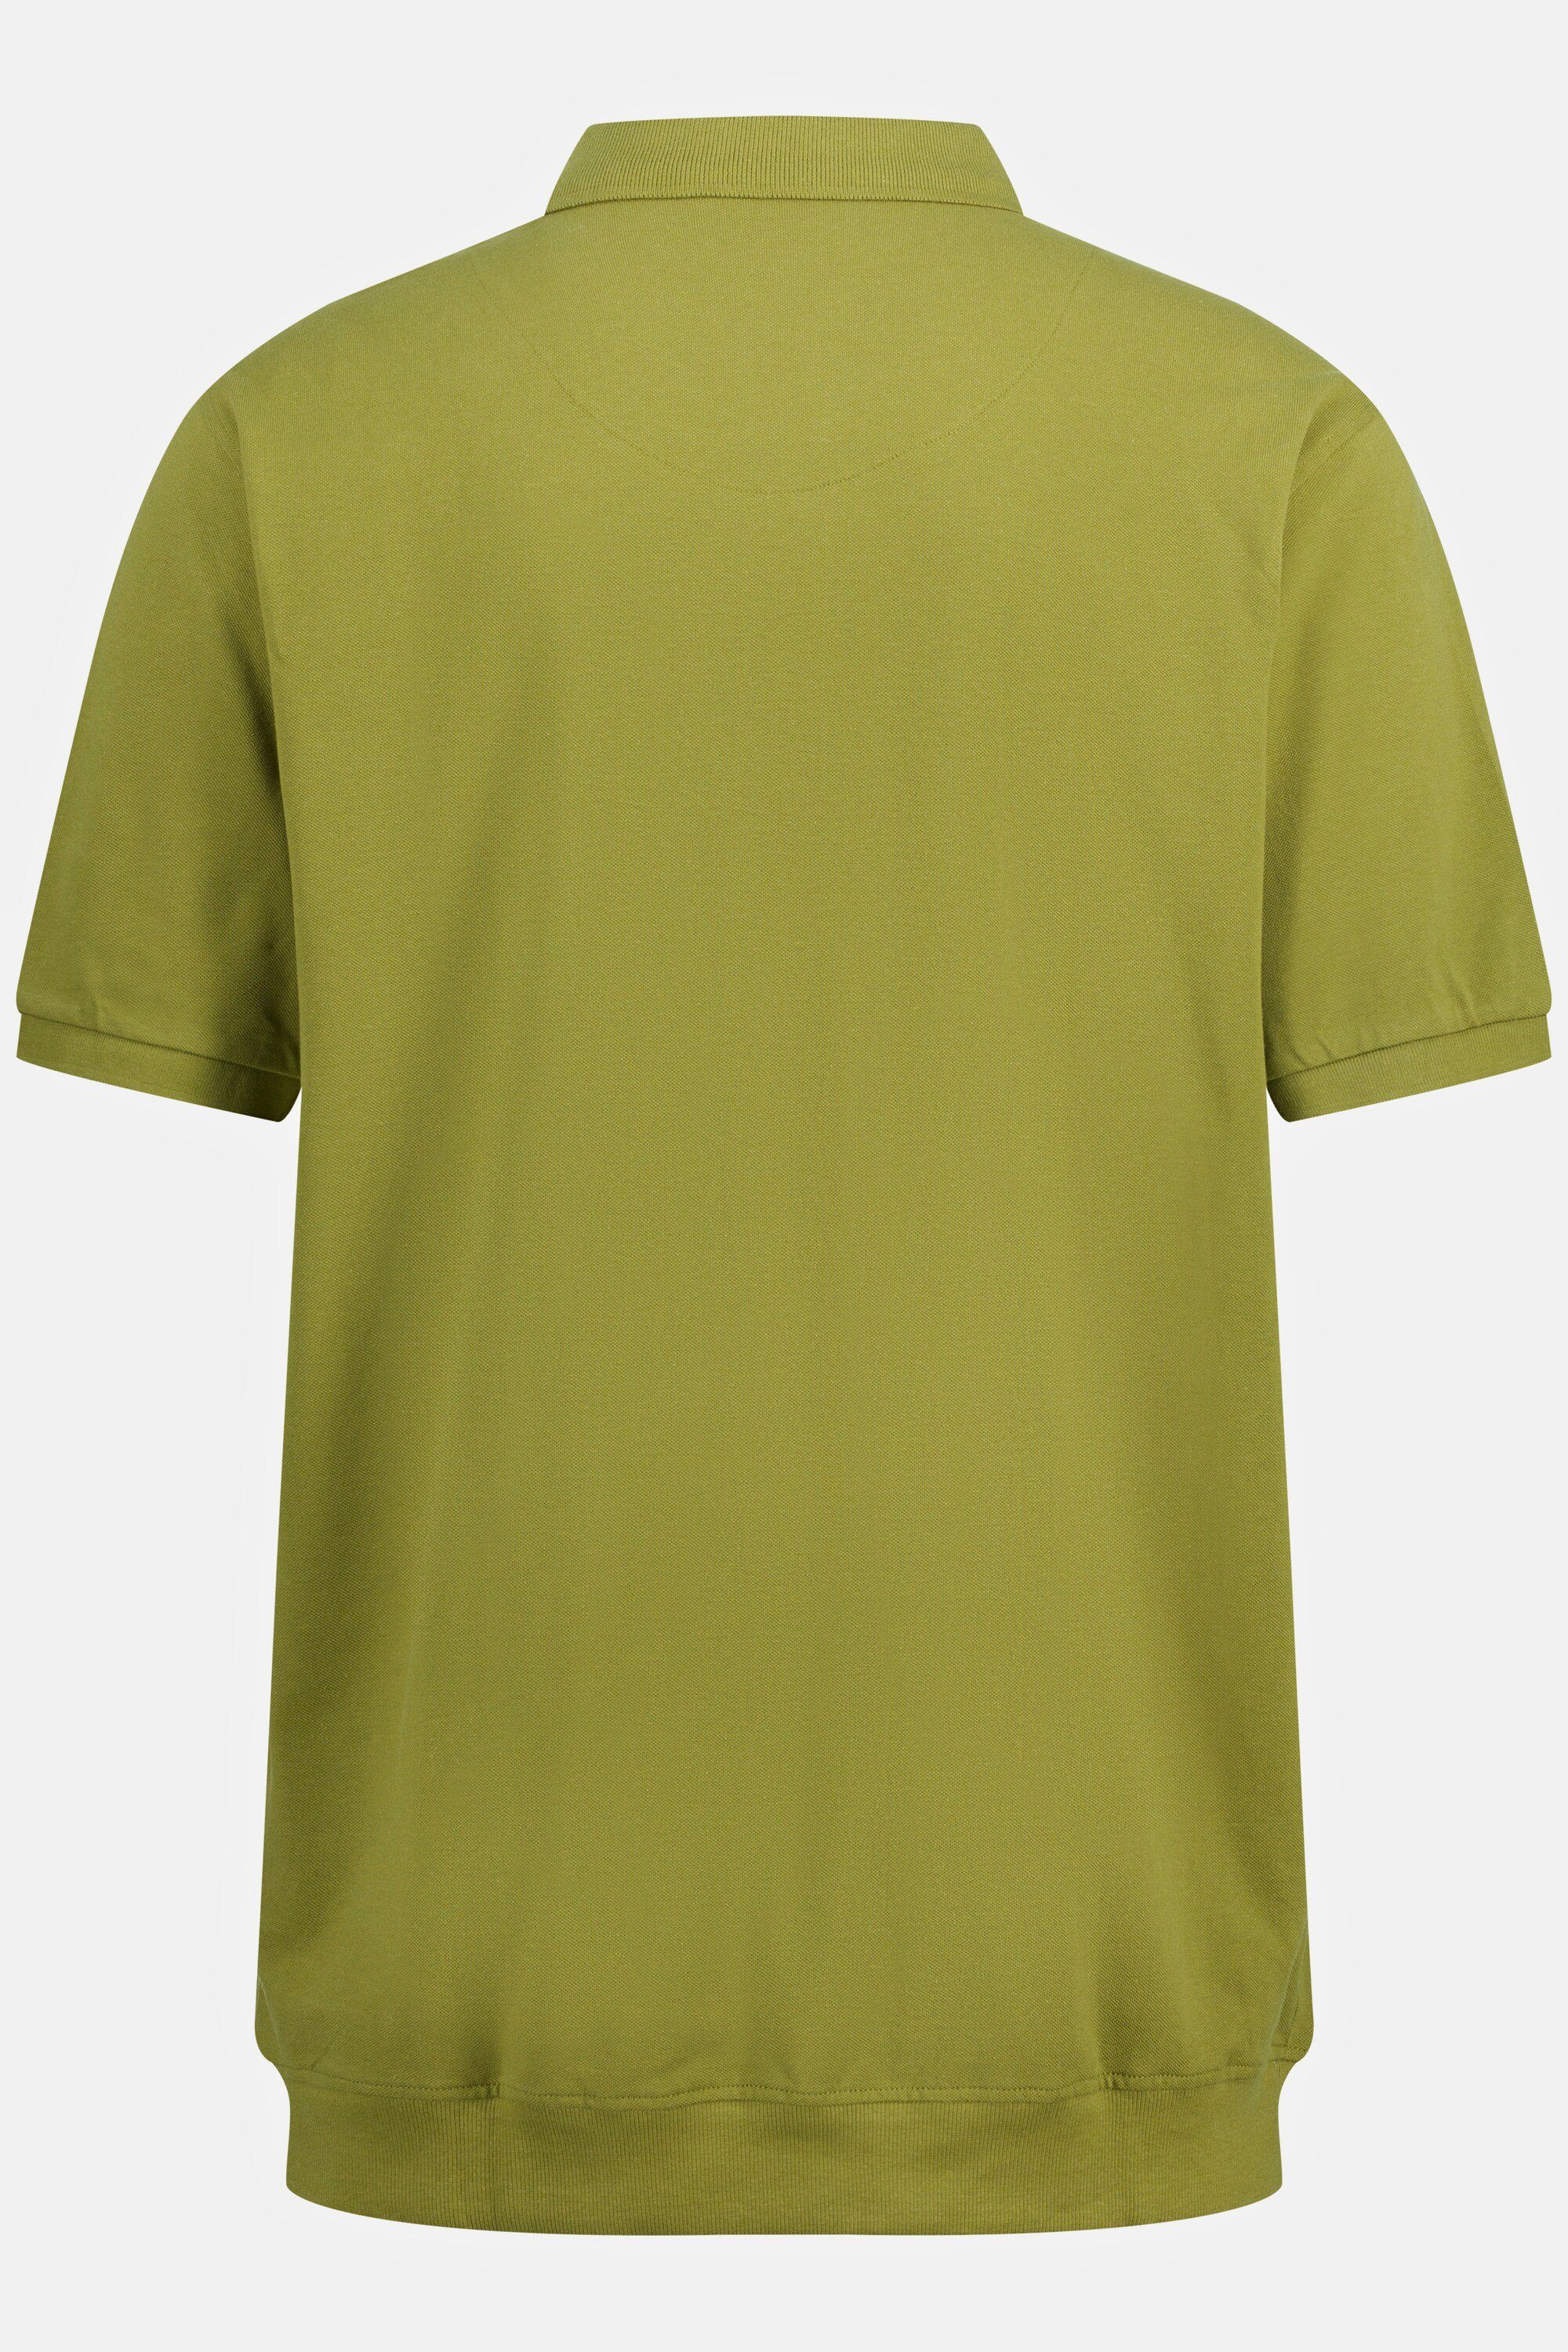 bis Piqué Bauchfit moosgrün Poloshirt Poloshirt XXL Basic 10XL JP1880